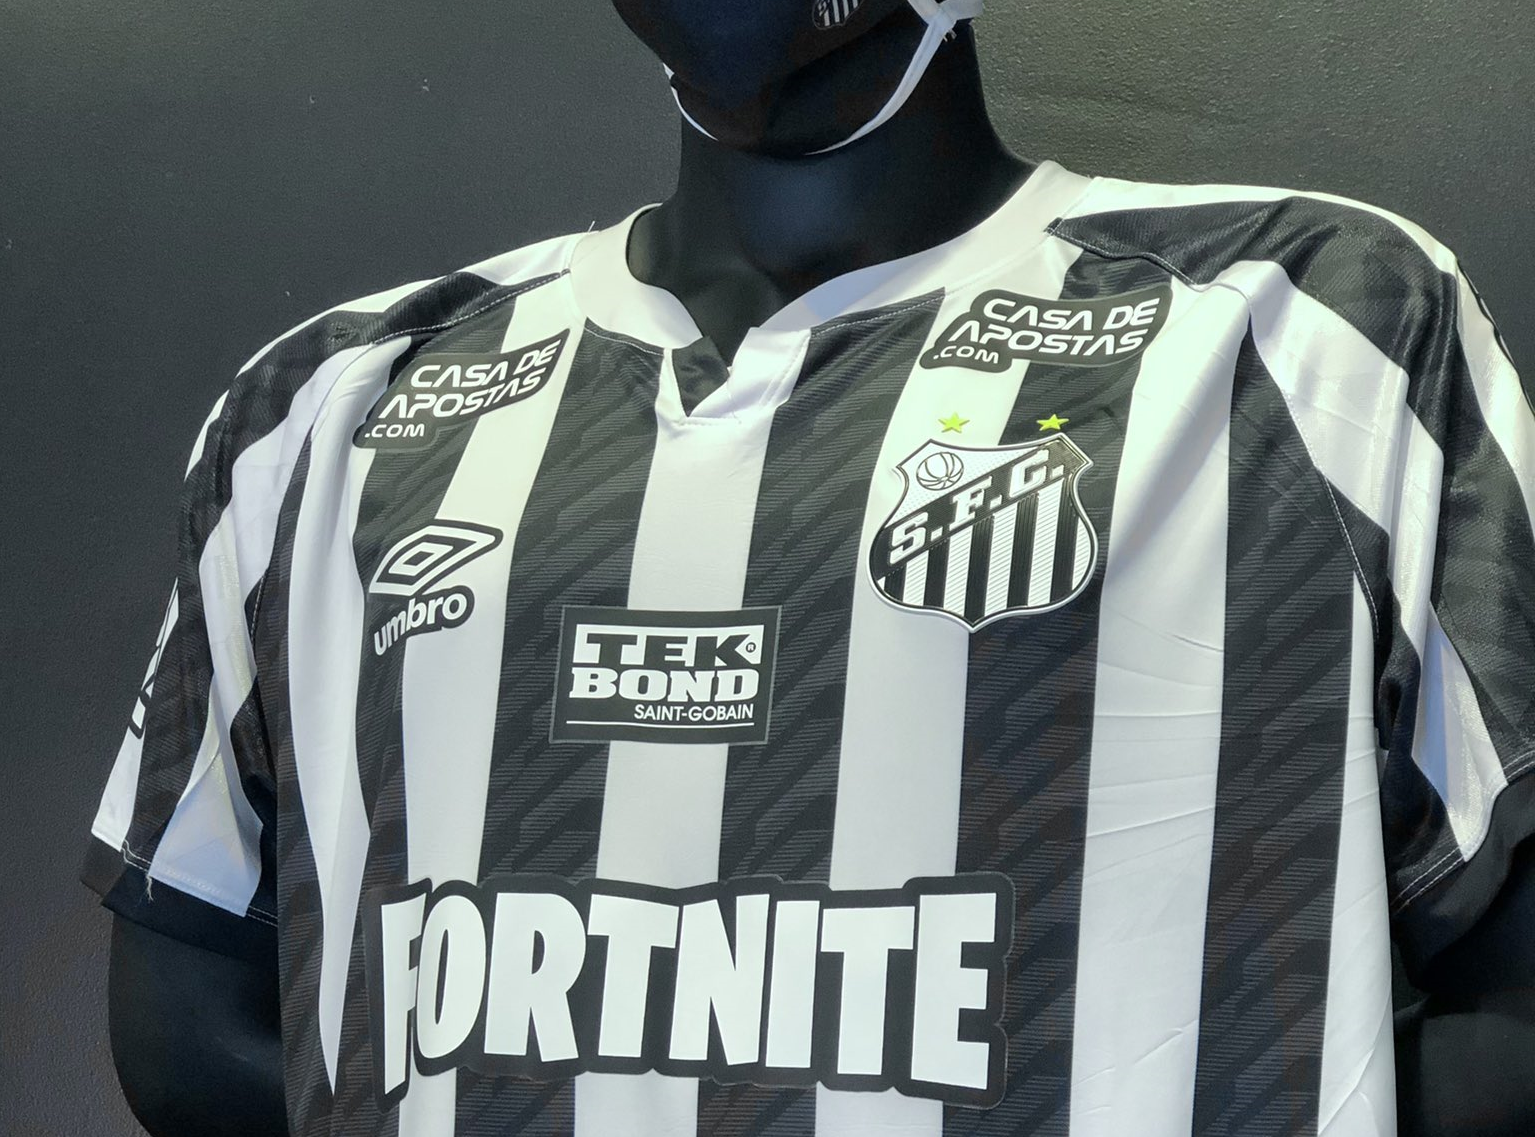 Venda de ingressos para Santos FC a América-MG, pelo Campeonato Brasileiro  - Santos Futebol Clube